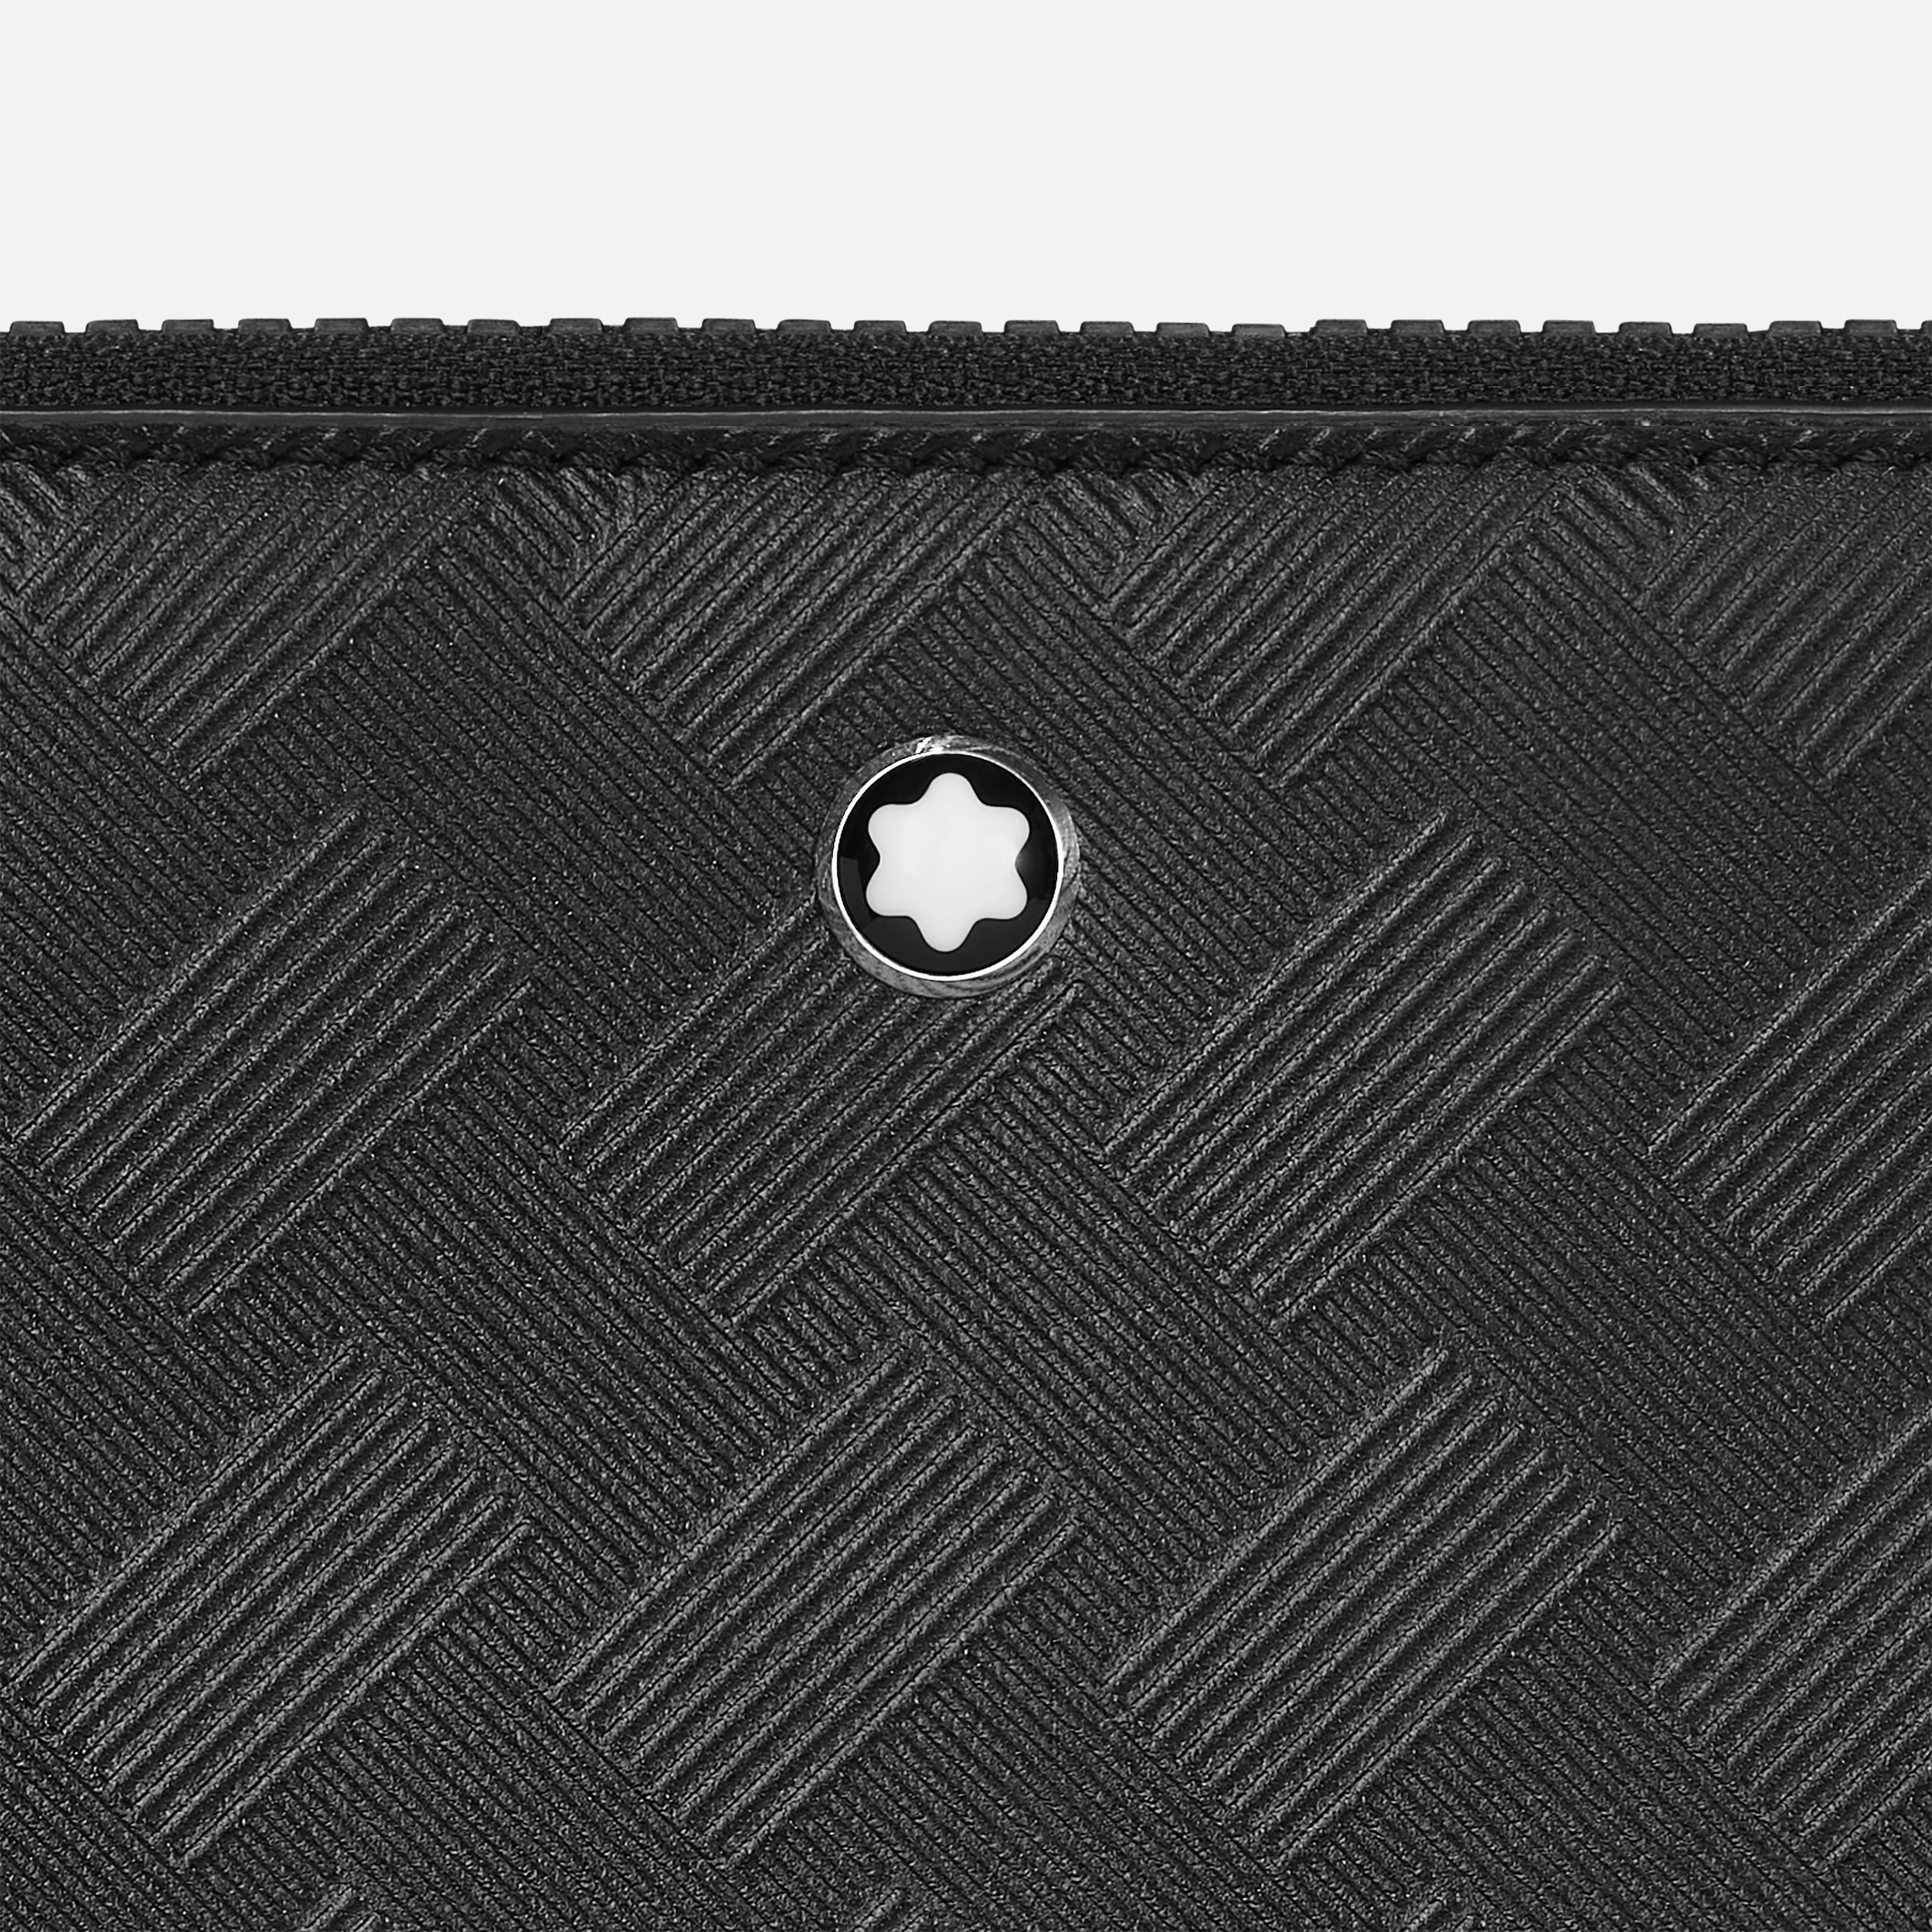 Montblanc Extreme 3.0 Laptop Case Black - Pencraft the boutique